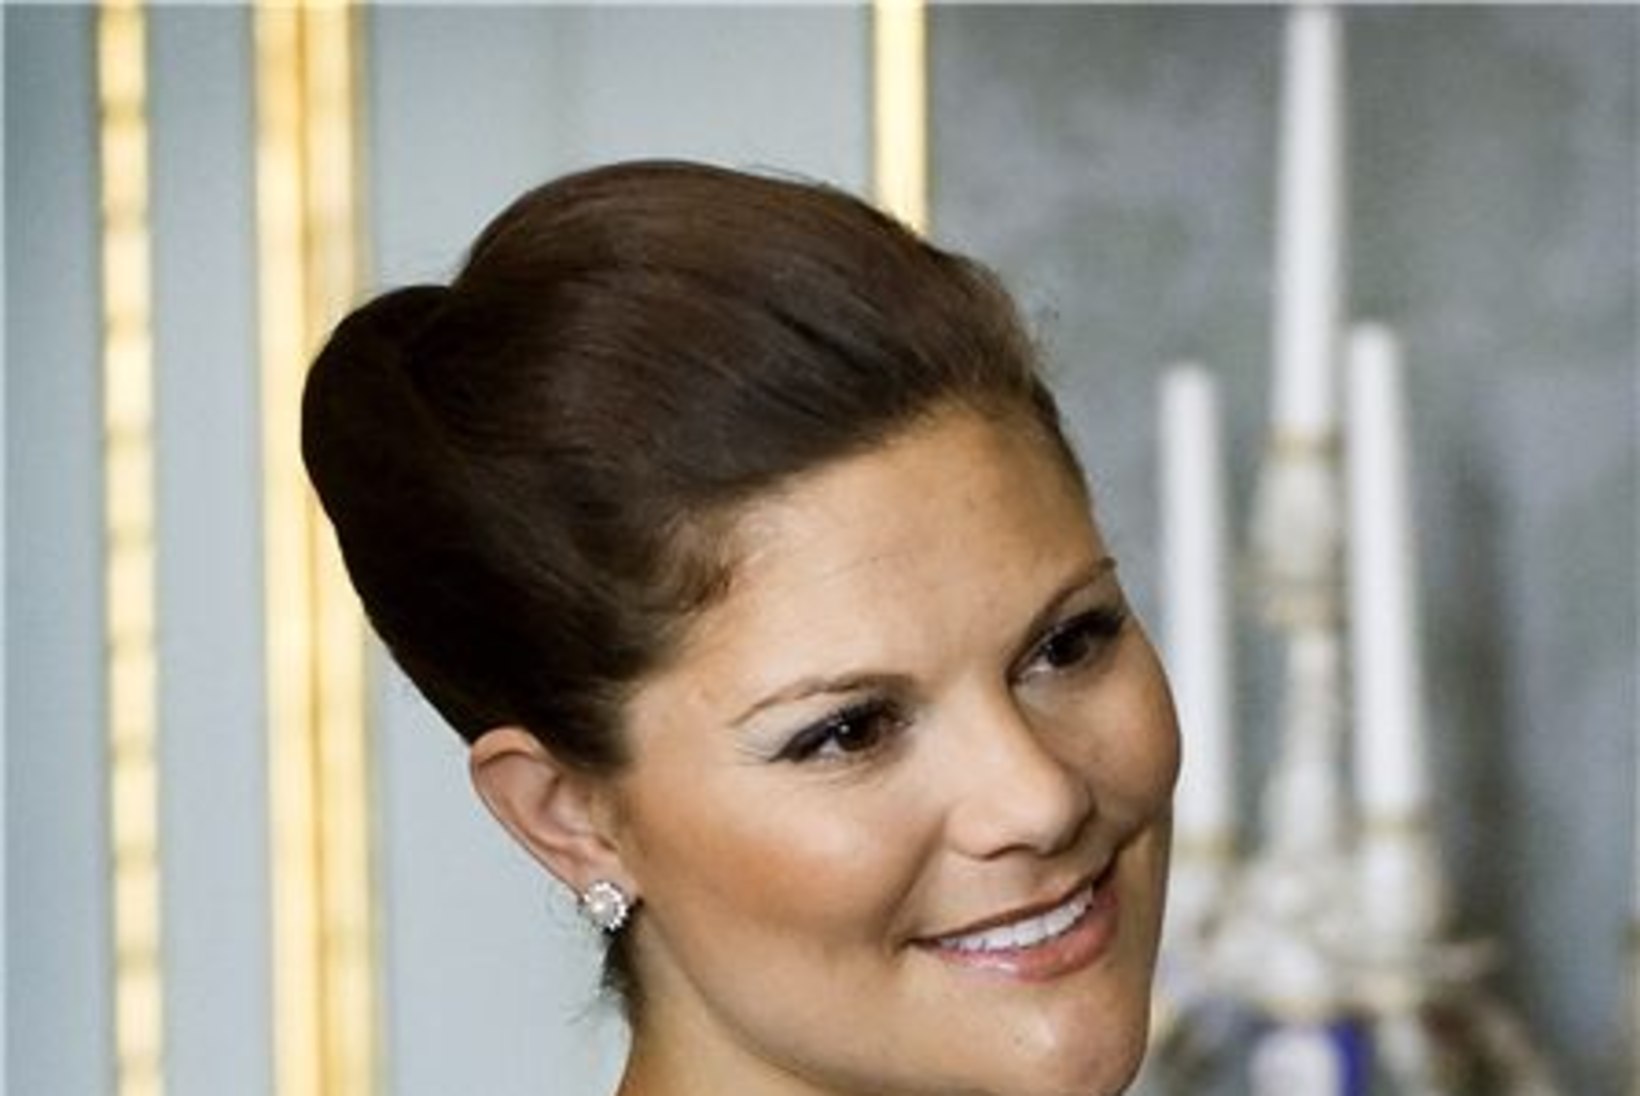 Rootslased on kroonprintsessile laisad õnne soovima